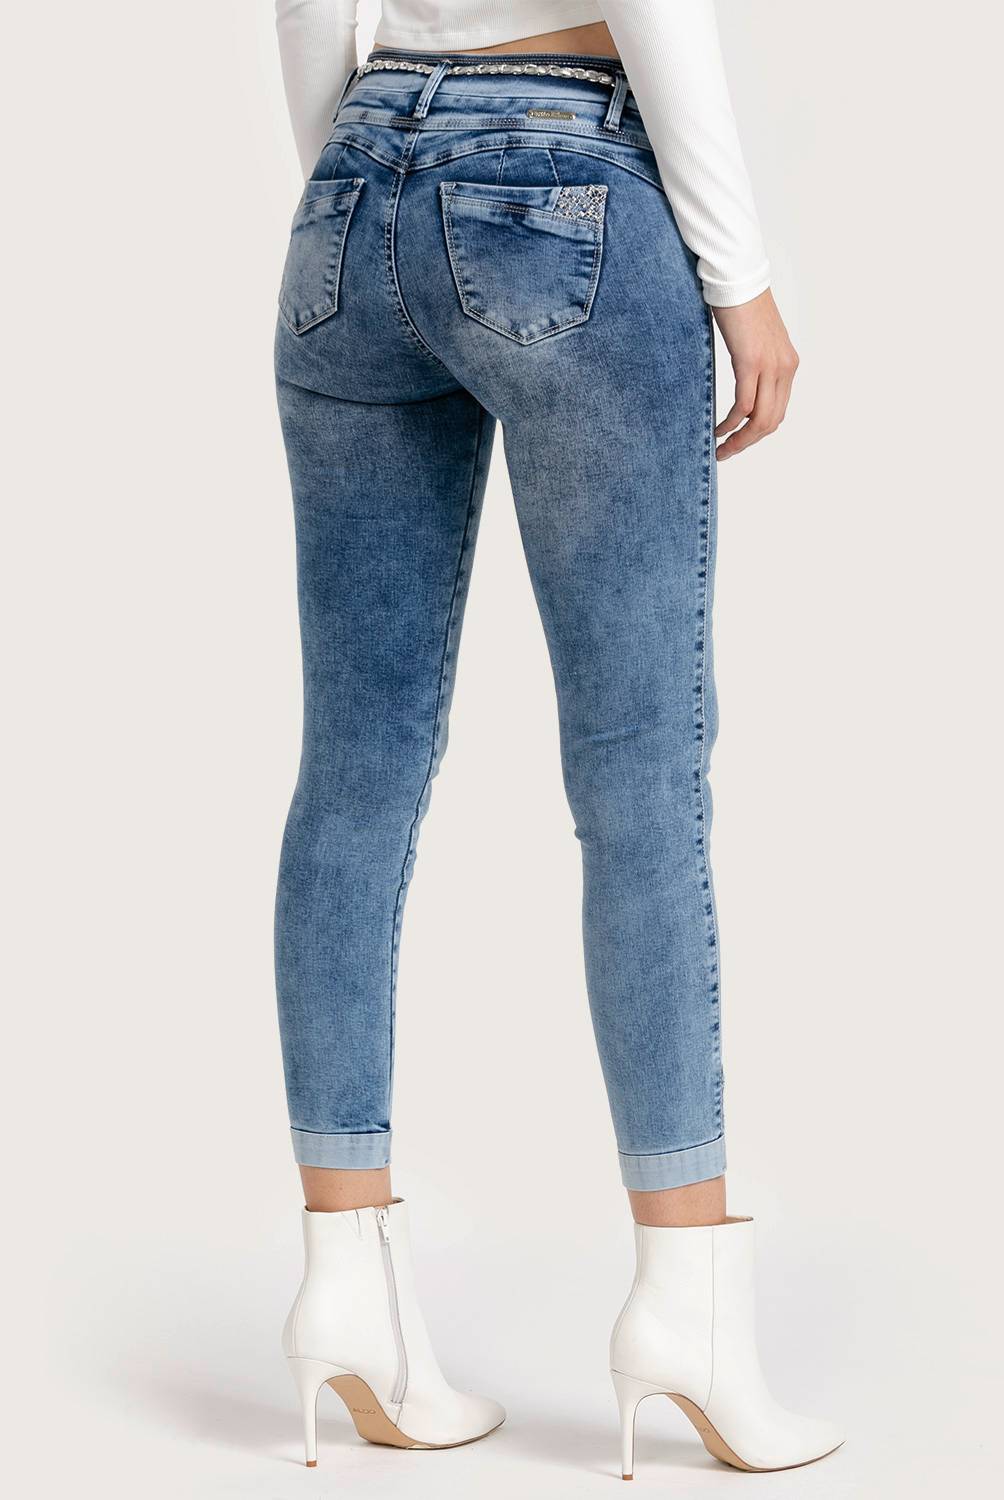 MOSSIMO - Jeans de Algodón Mujer